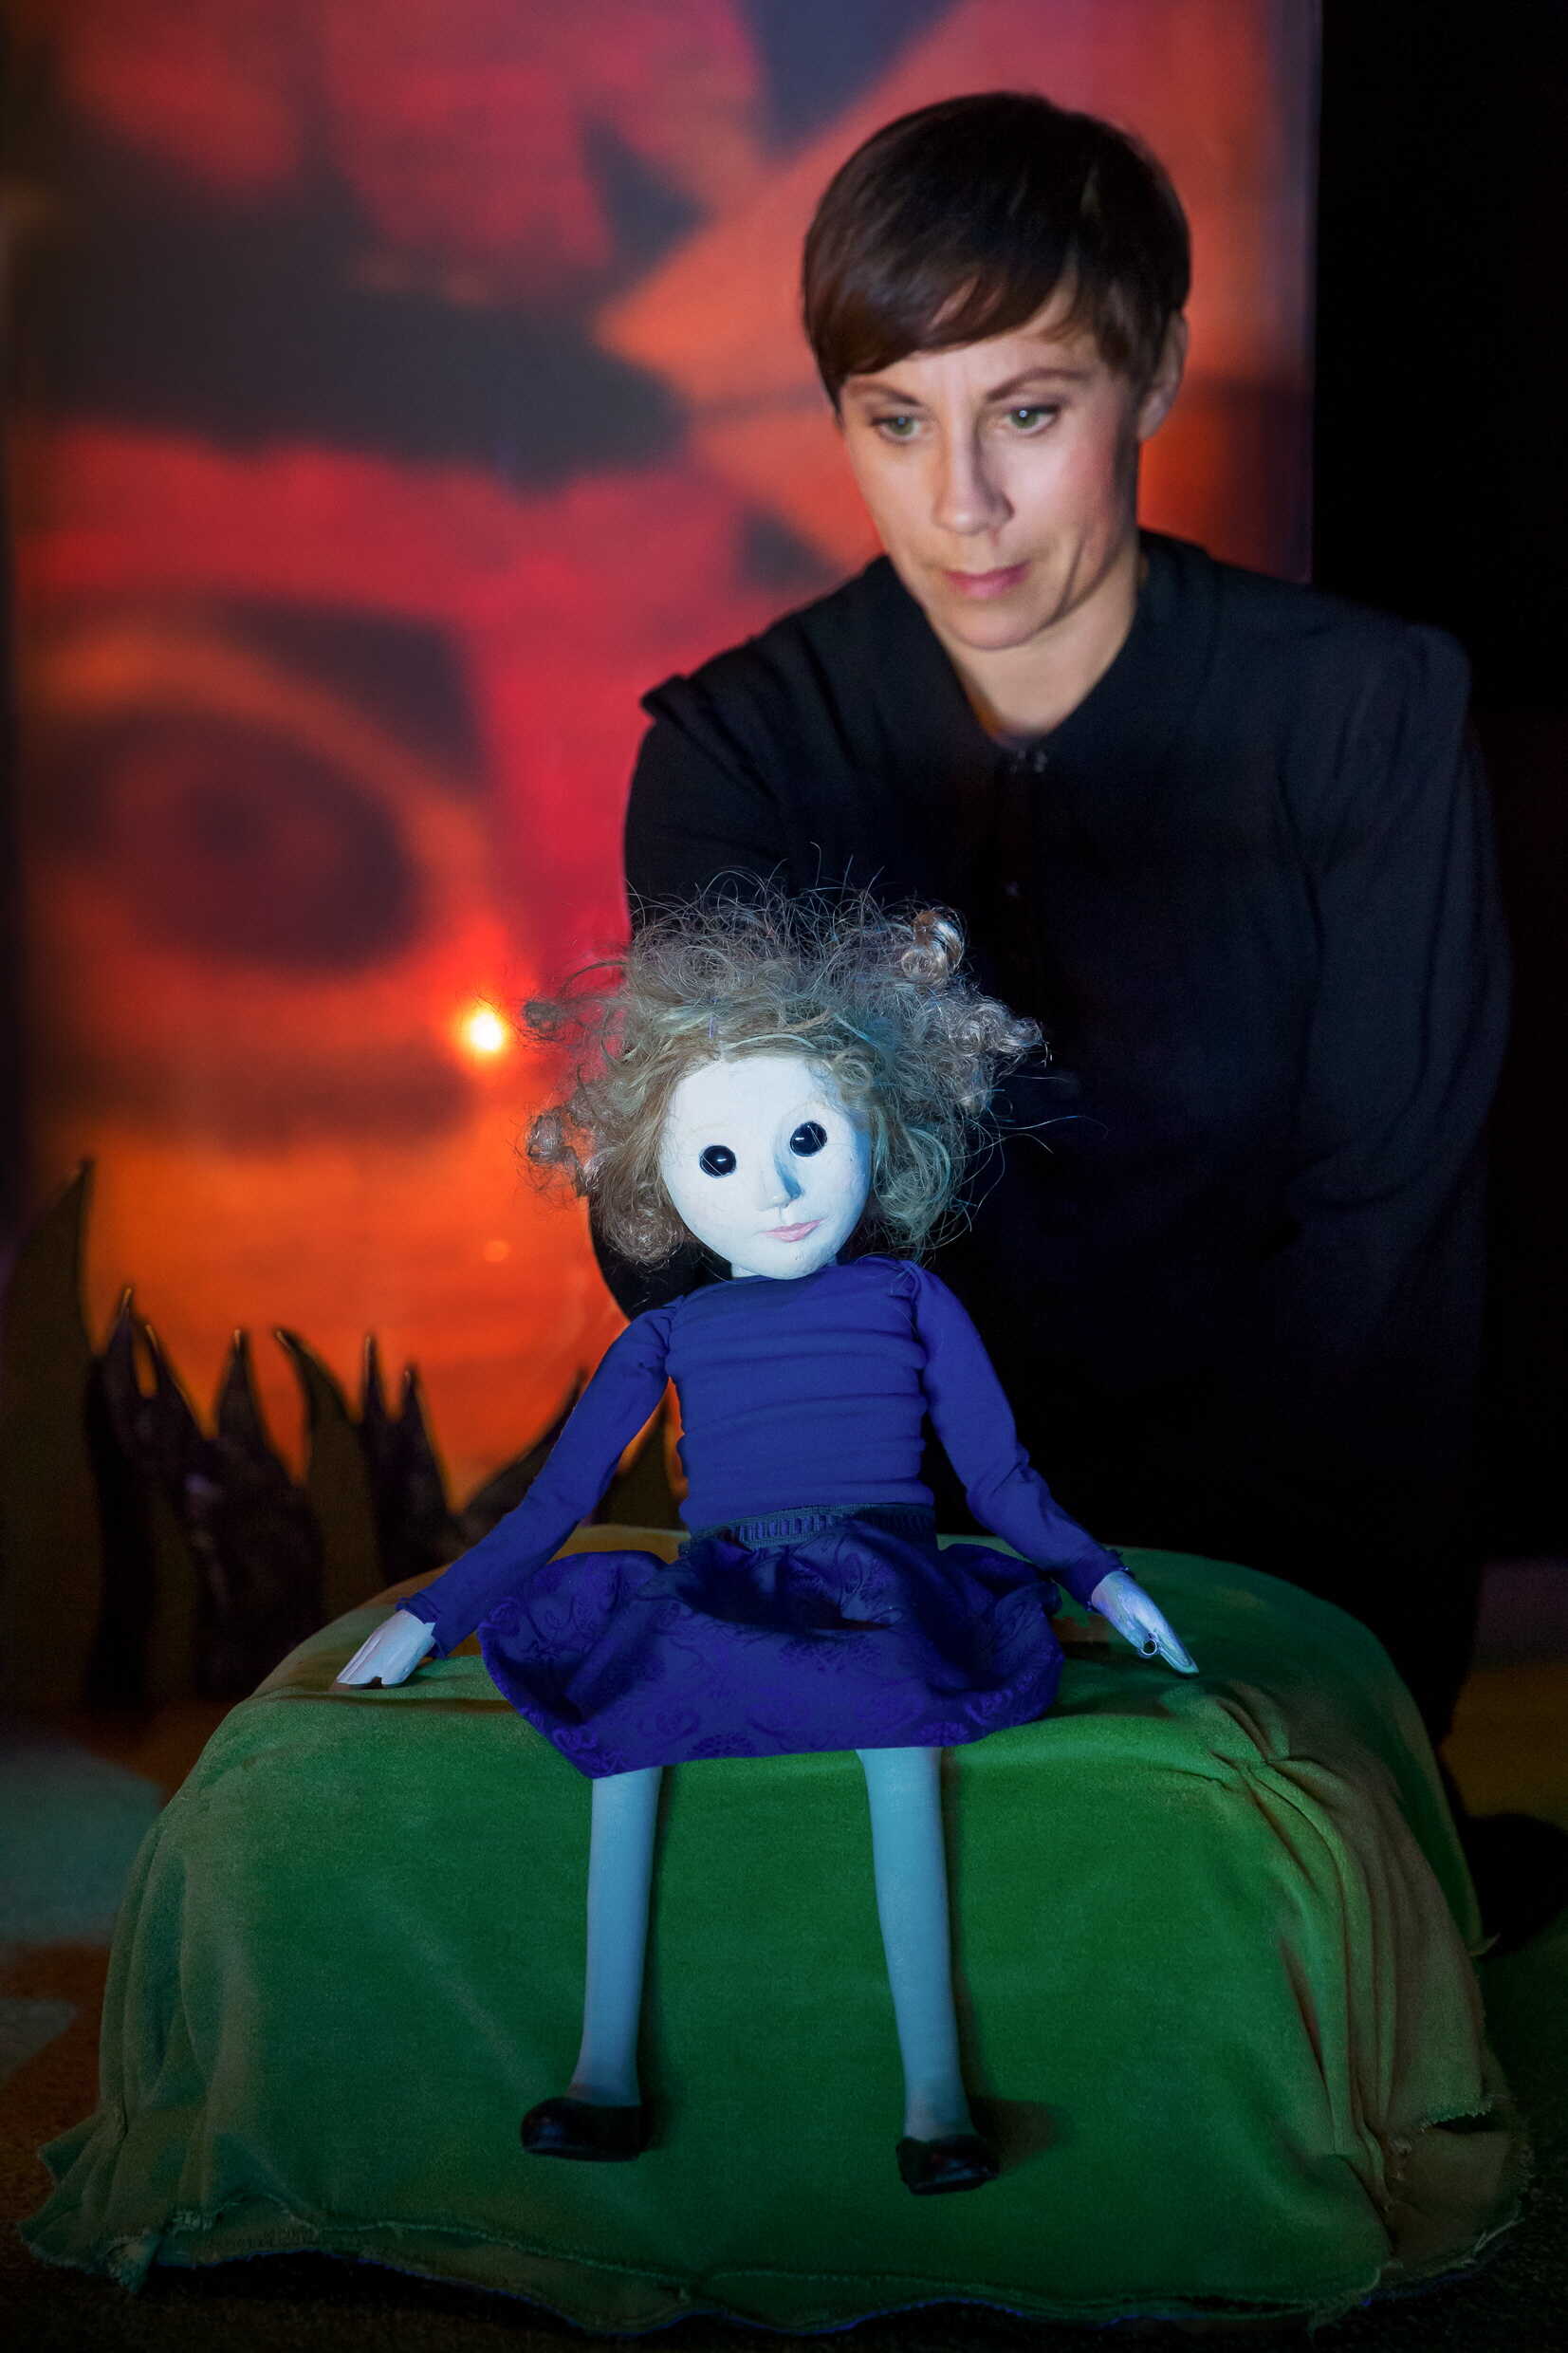 Alice av Margareta Sörenson efter originalberättelse av Lewis Carroll. Urpremiär 20 oktober 2018 på Marionetteatern. Kulturhuset Stadsteatern 2018